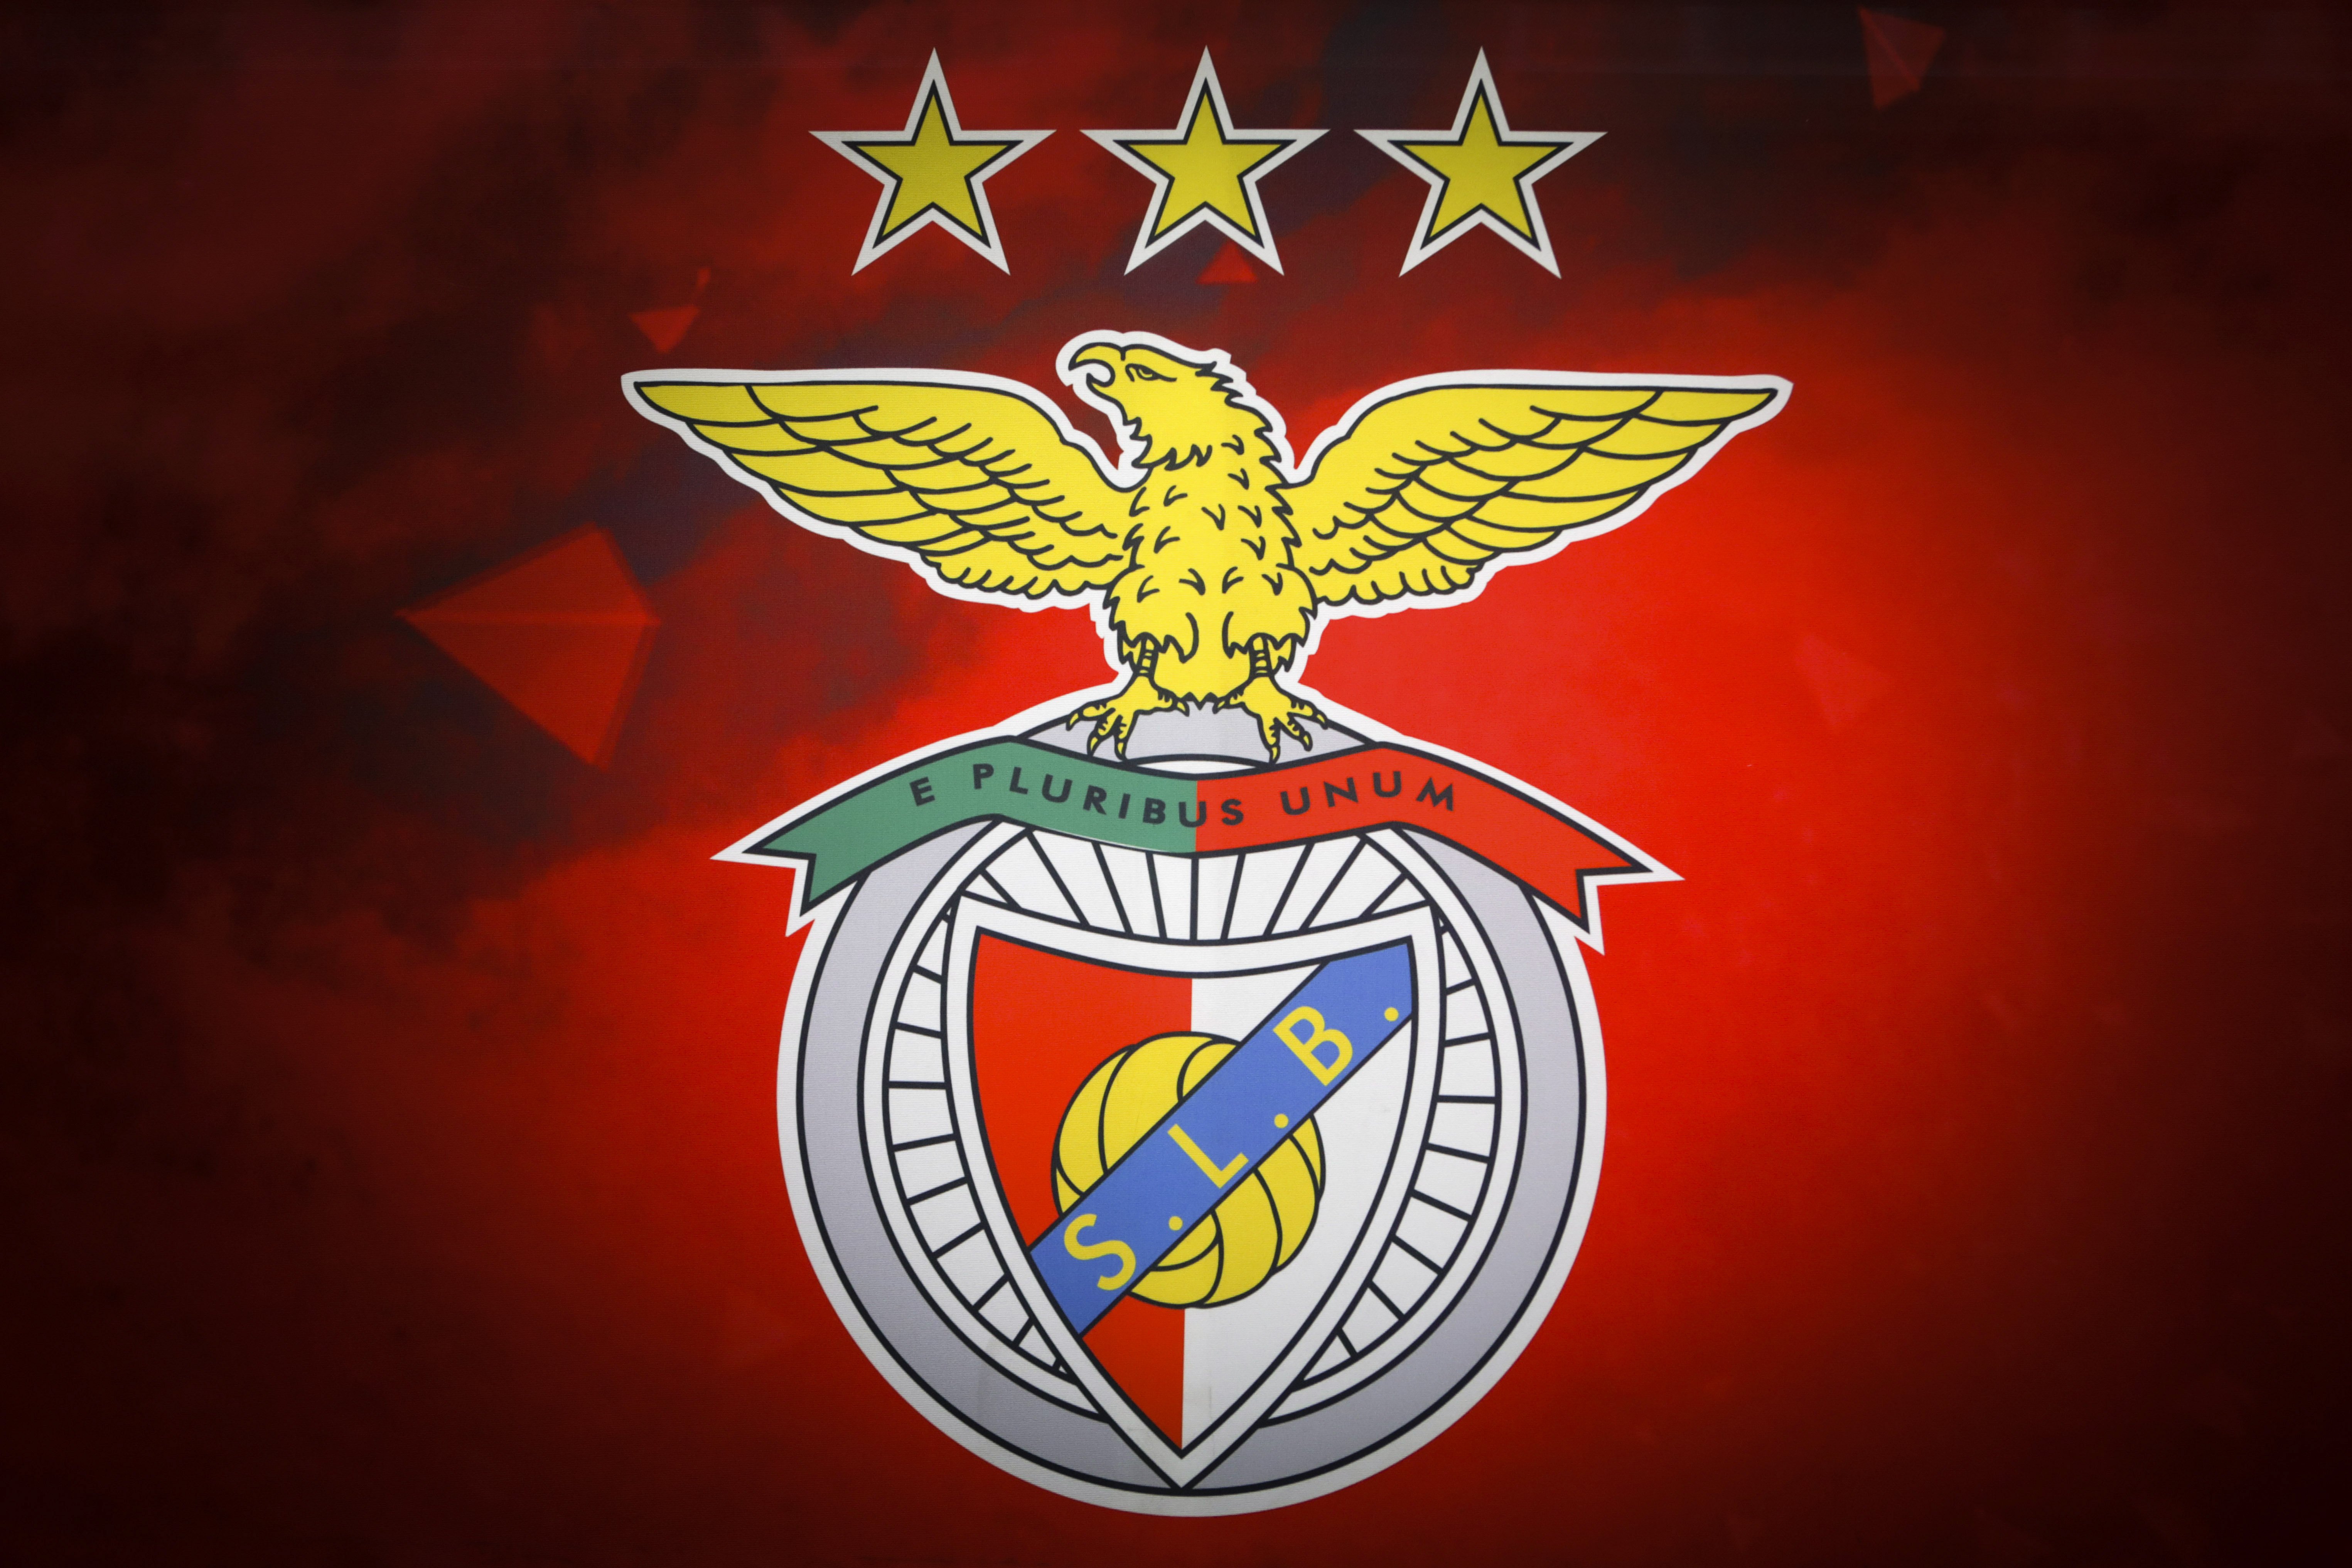 Quatro arguidos em investigação ao Benfica sobre branqueamento de capitais e fraude fiscal